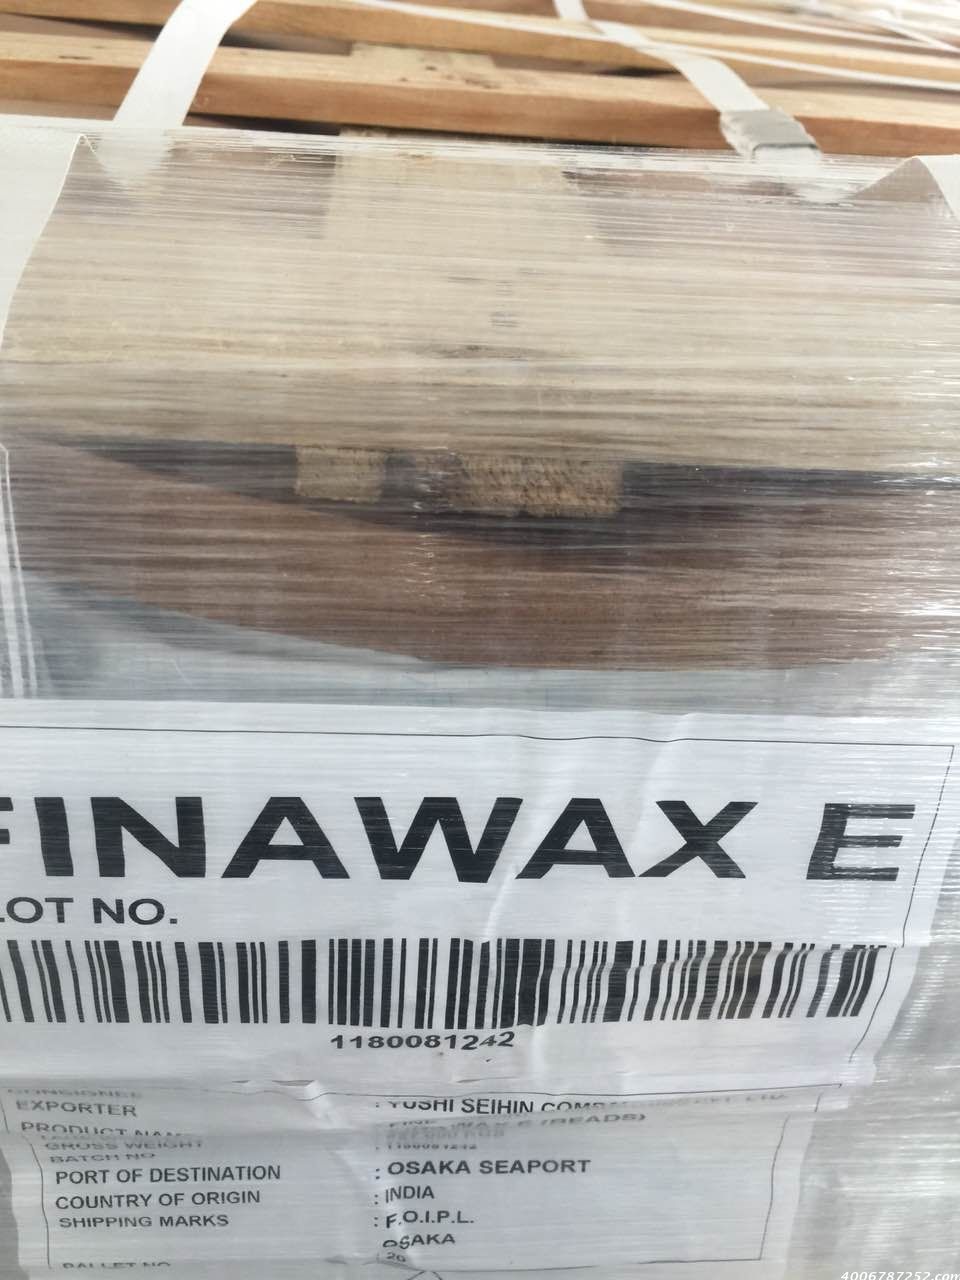 印度芥酸酰胺FINAWAX-E